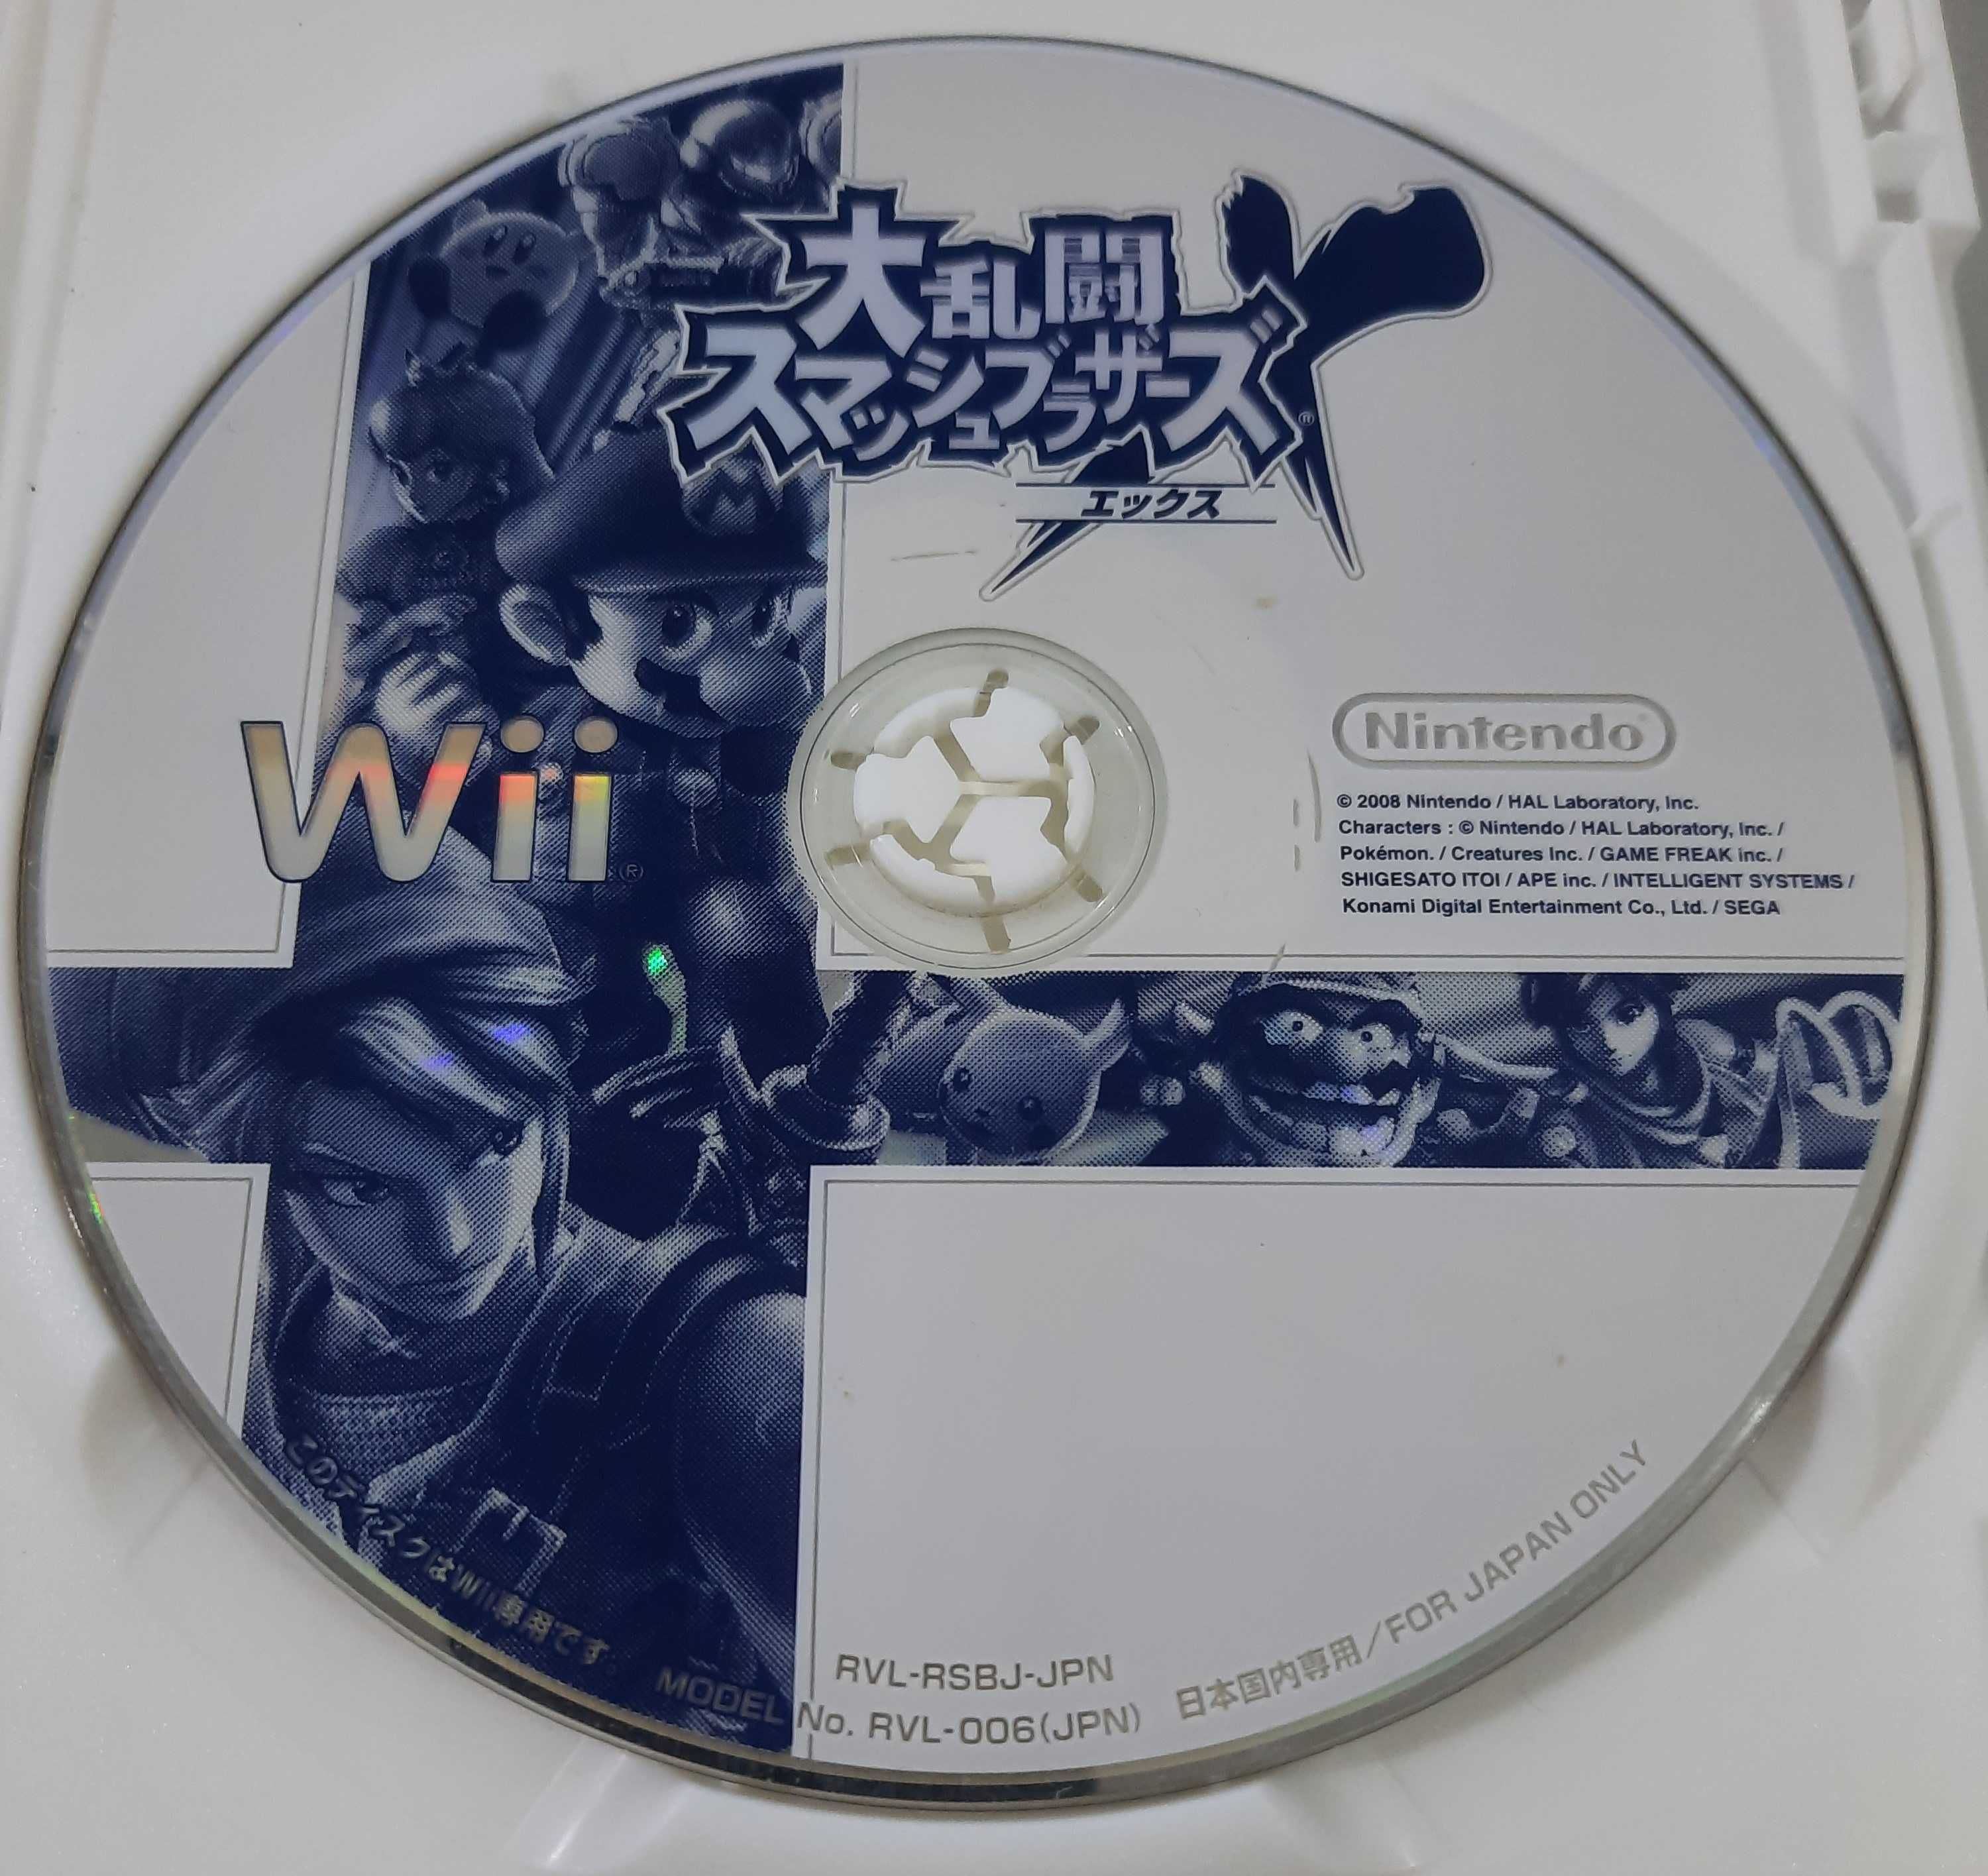 Dairantou Smash Bros X Brawl / Wii [NTSC-J]